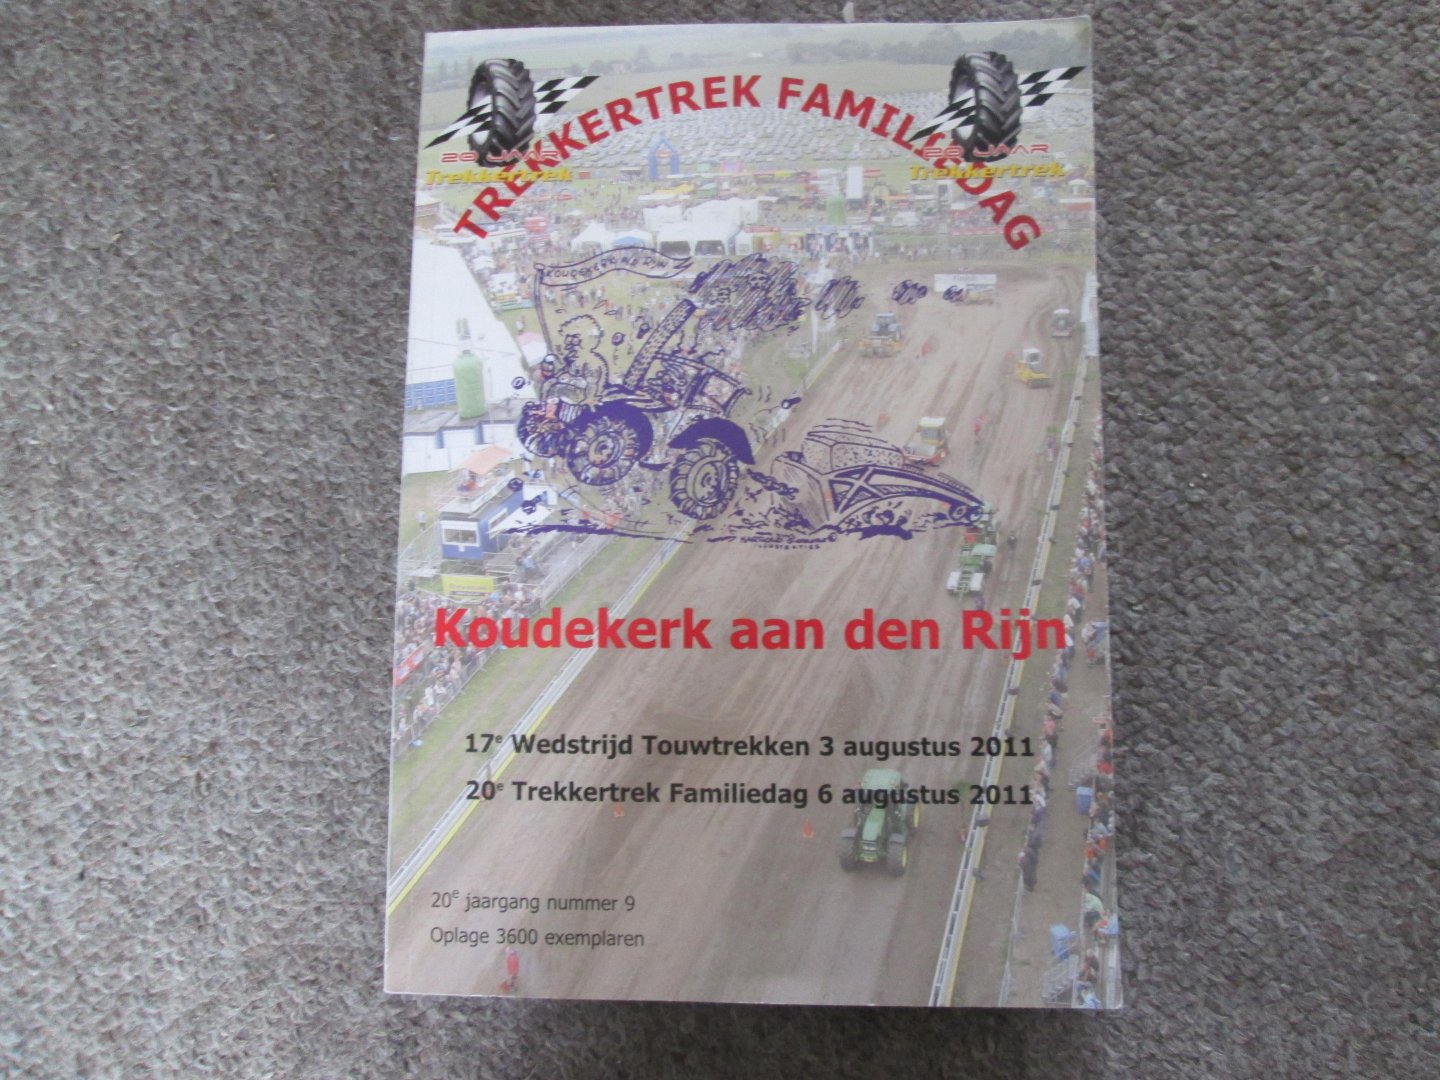 Leeuwen , Hans van / Arjan Schellingerhoudt / Mario Boere ea. - TREKKERTREK FAMILIEDAG KOUDEKERK AAN DEN RIJN ( programmaboek 3 + 6 augustus 2011 )